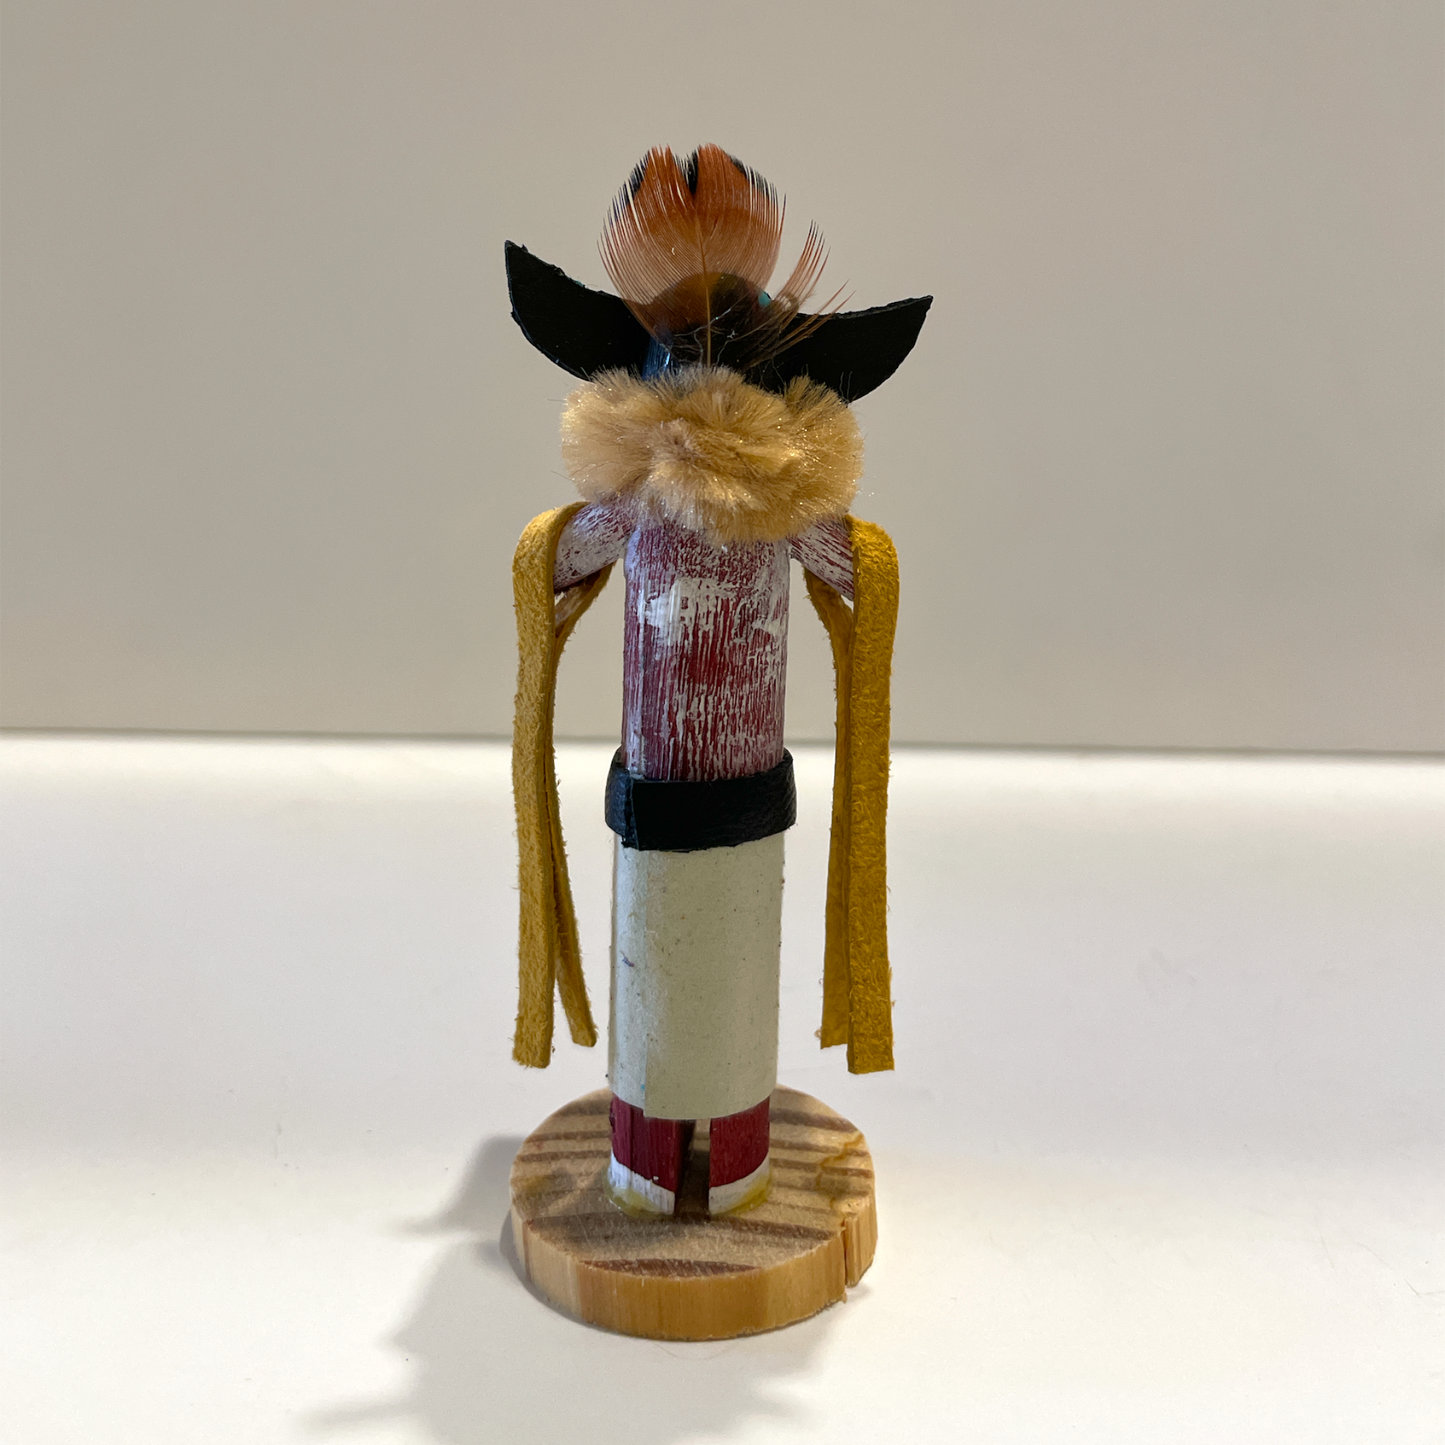 Native American Navajo Tiny Kachina Doll / HoToTo B